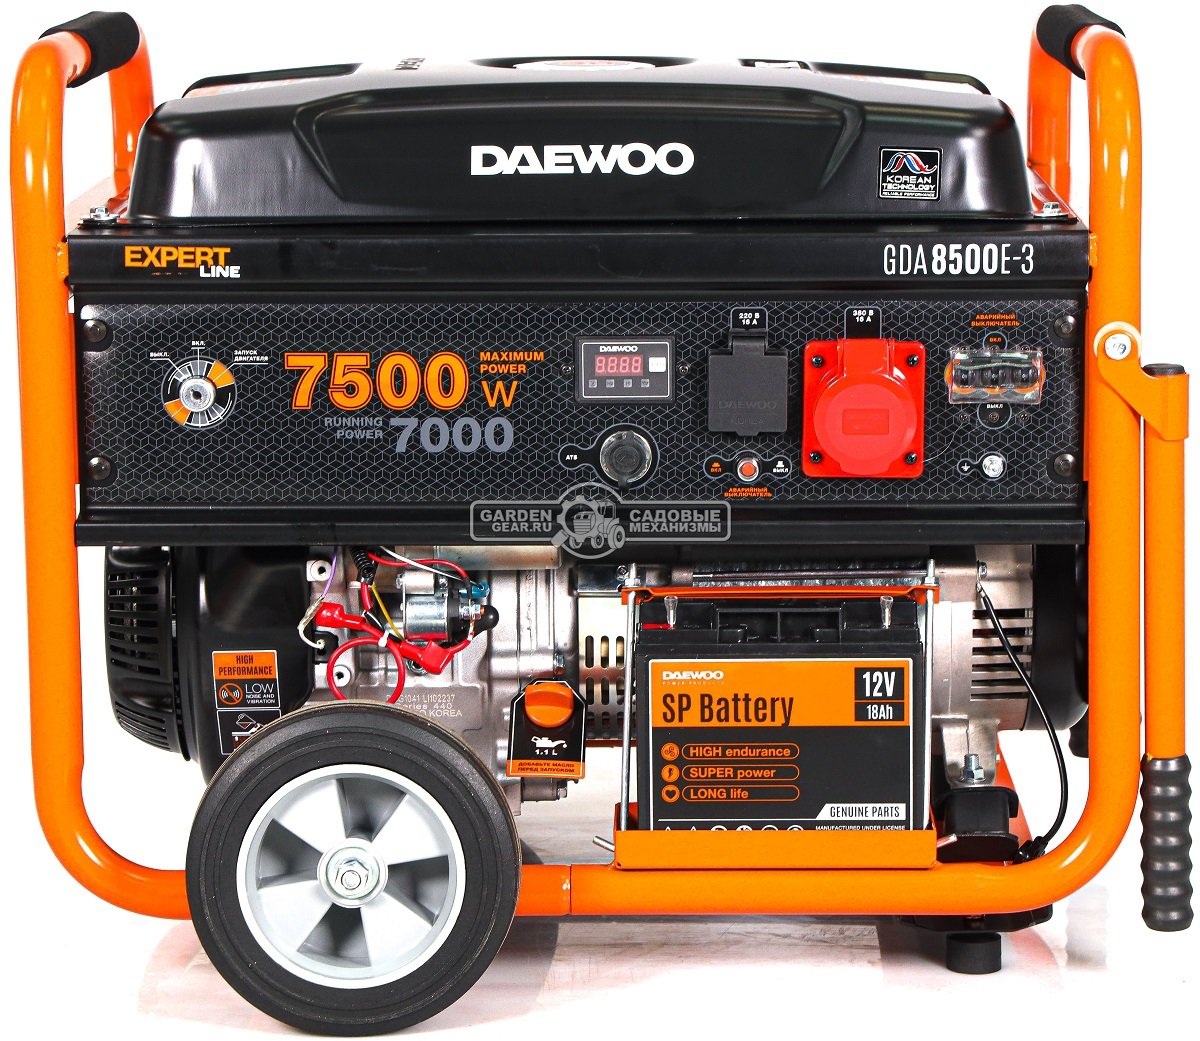 Бензиновый генератор Daewoo GDA 8500E-3 трехфазный (PRC, 445 см3, 7,0/7,5 кВт, электростартер, разъем ATS, колеса, 30 л, 94,1 кг.)